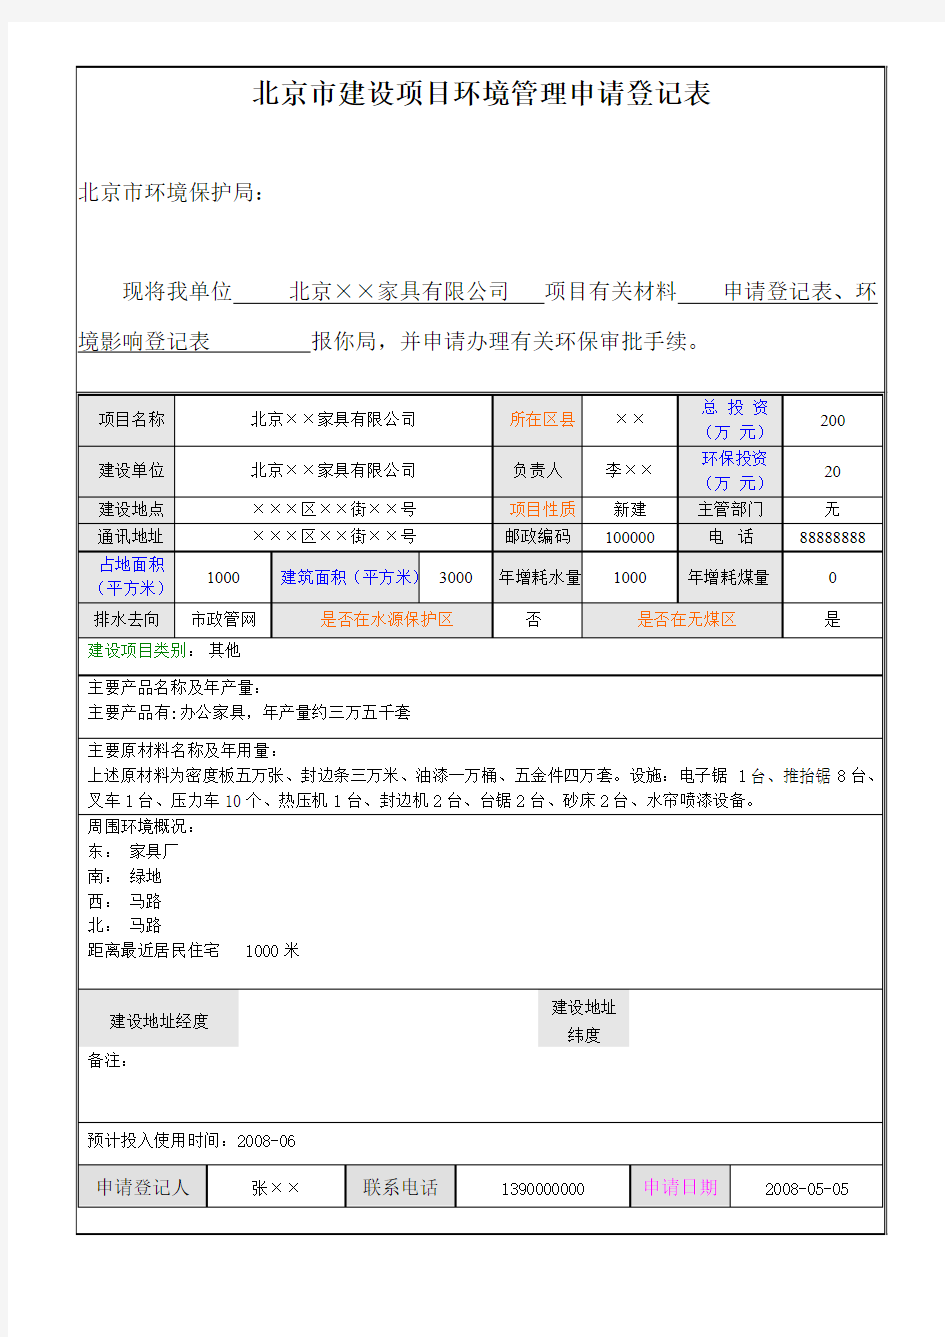 北京市建设项目环境管理申请登记表